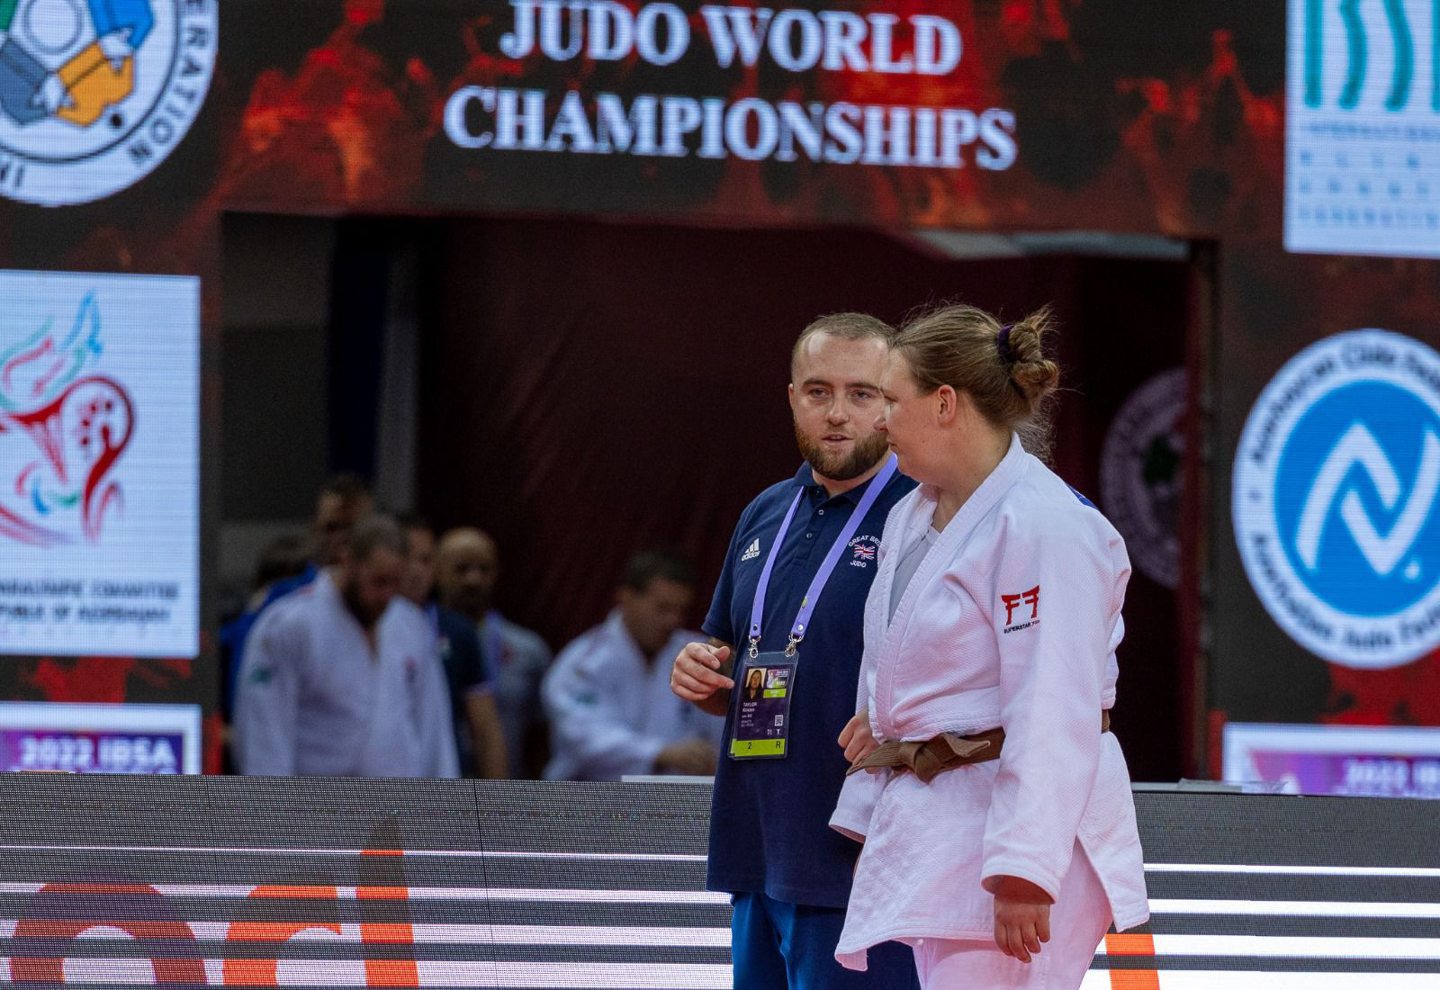 Kirsten Taylor at the Judo World Championships.